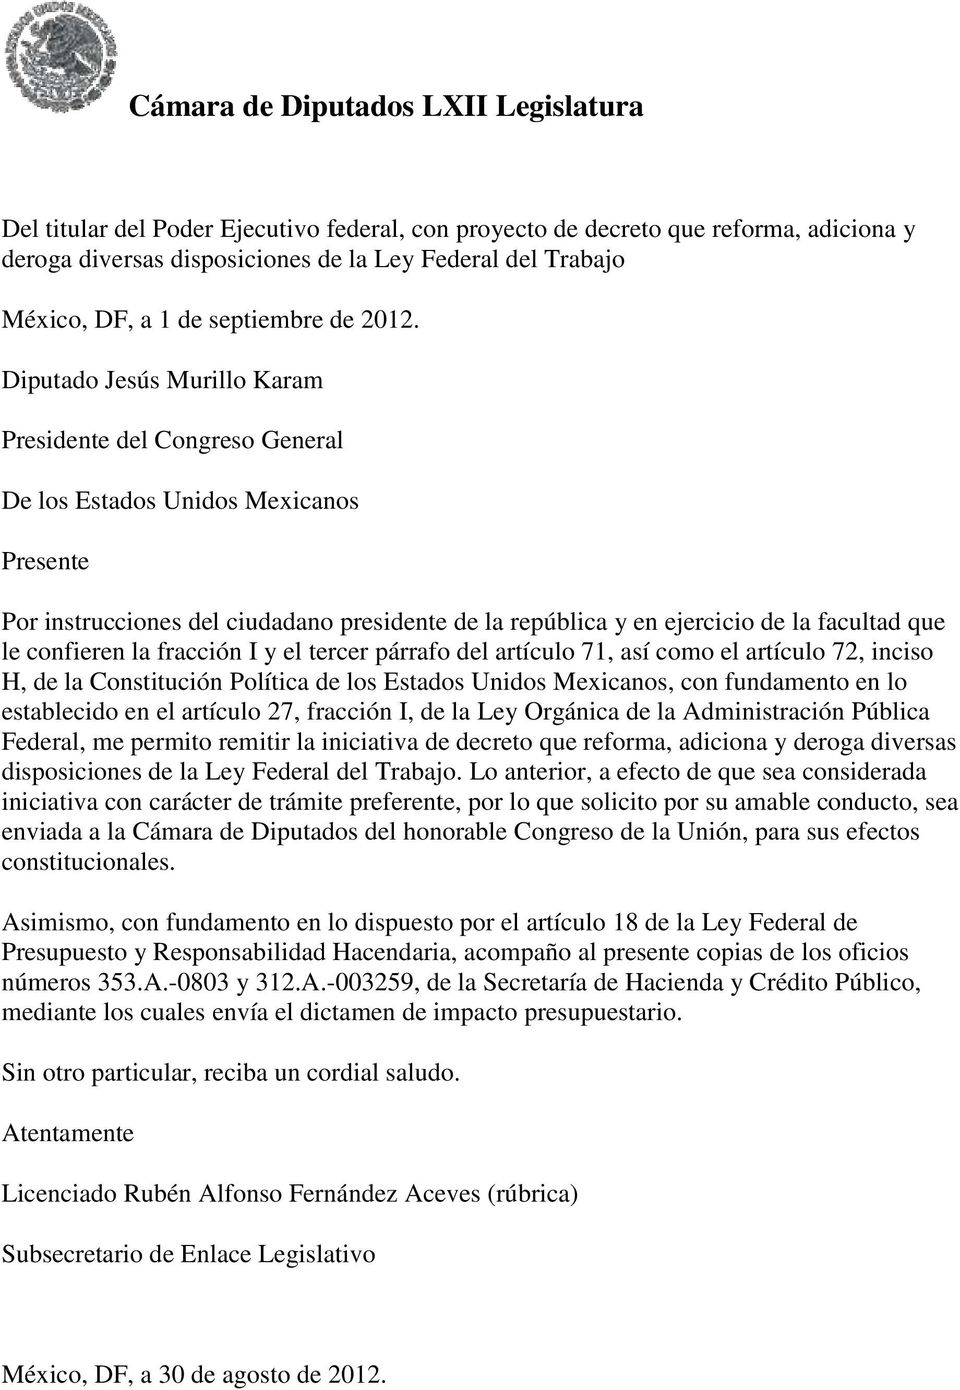 Diputado Jesús Murillo Karam Presidente del Congreso General De los Estados Unidos Mexicanos Presente Por instrucciones del ciudadano presidente de la república y en ejercicio de la facultad que le